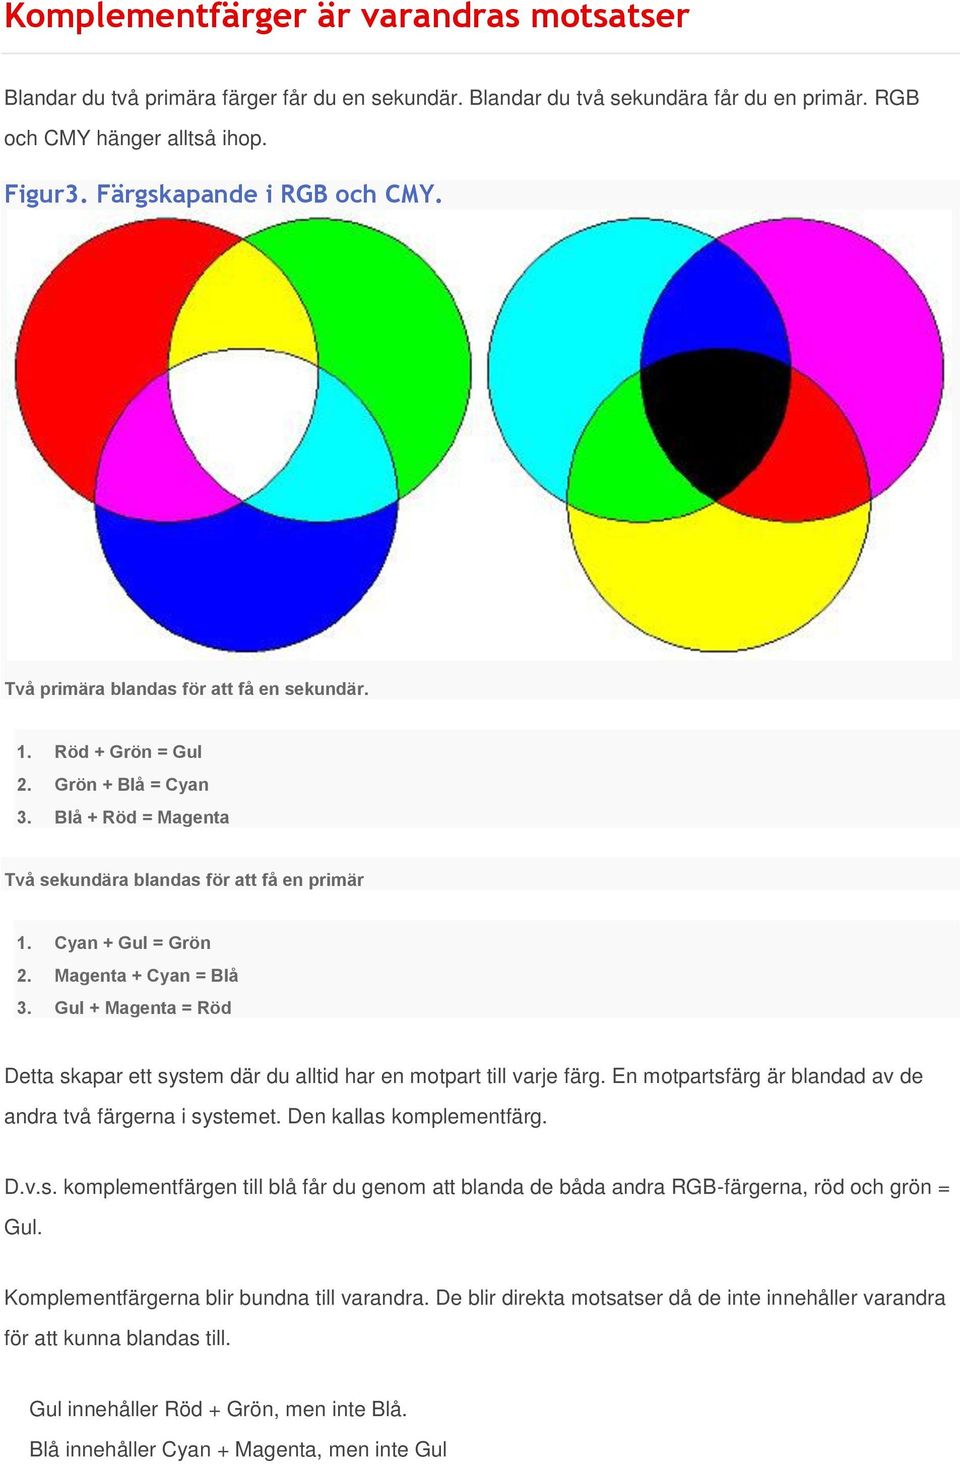 Gul + Magenta = Röd Detta skapar ett system där du alltid har en motpart till varje färg. En motpartsfärg är blandad av de andra två färgerna i systemet. Den kallas komplementfärg. D.v.s. komplementfärgen till blå får du genom att blanda de båda andra RGB-färgerna, röd och grön = Gul.